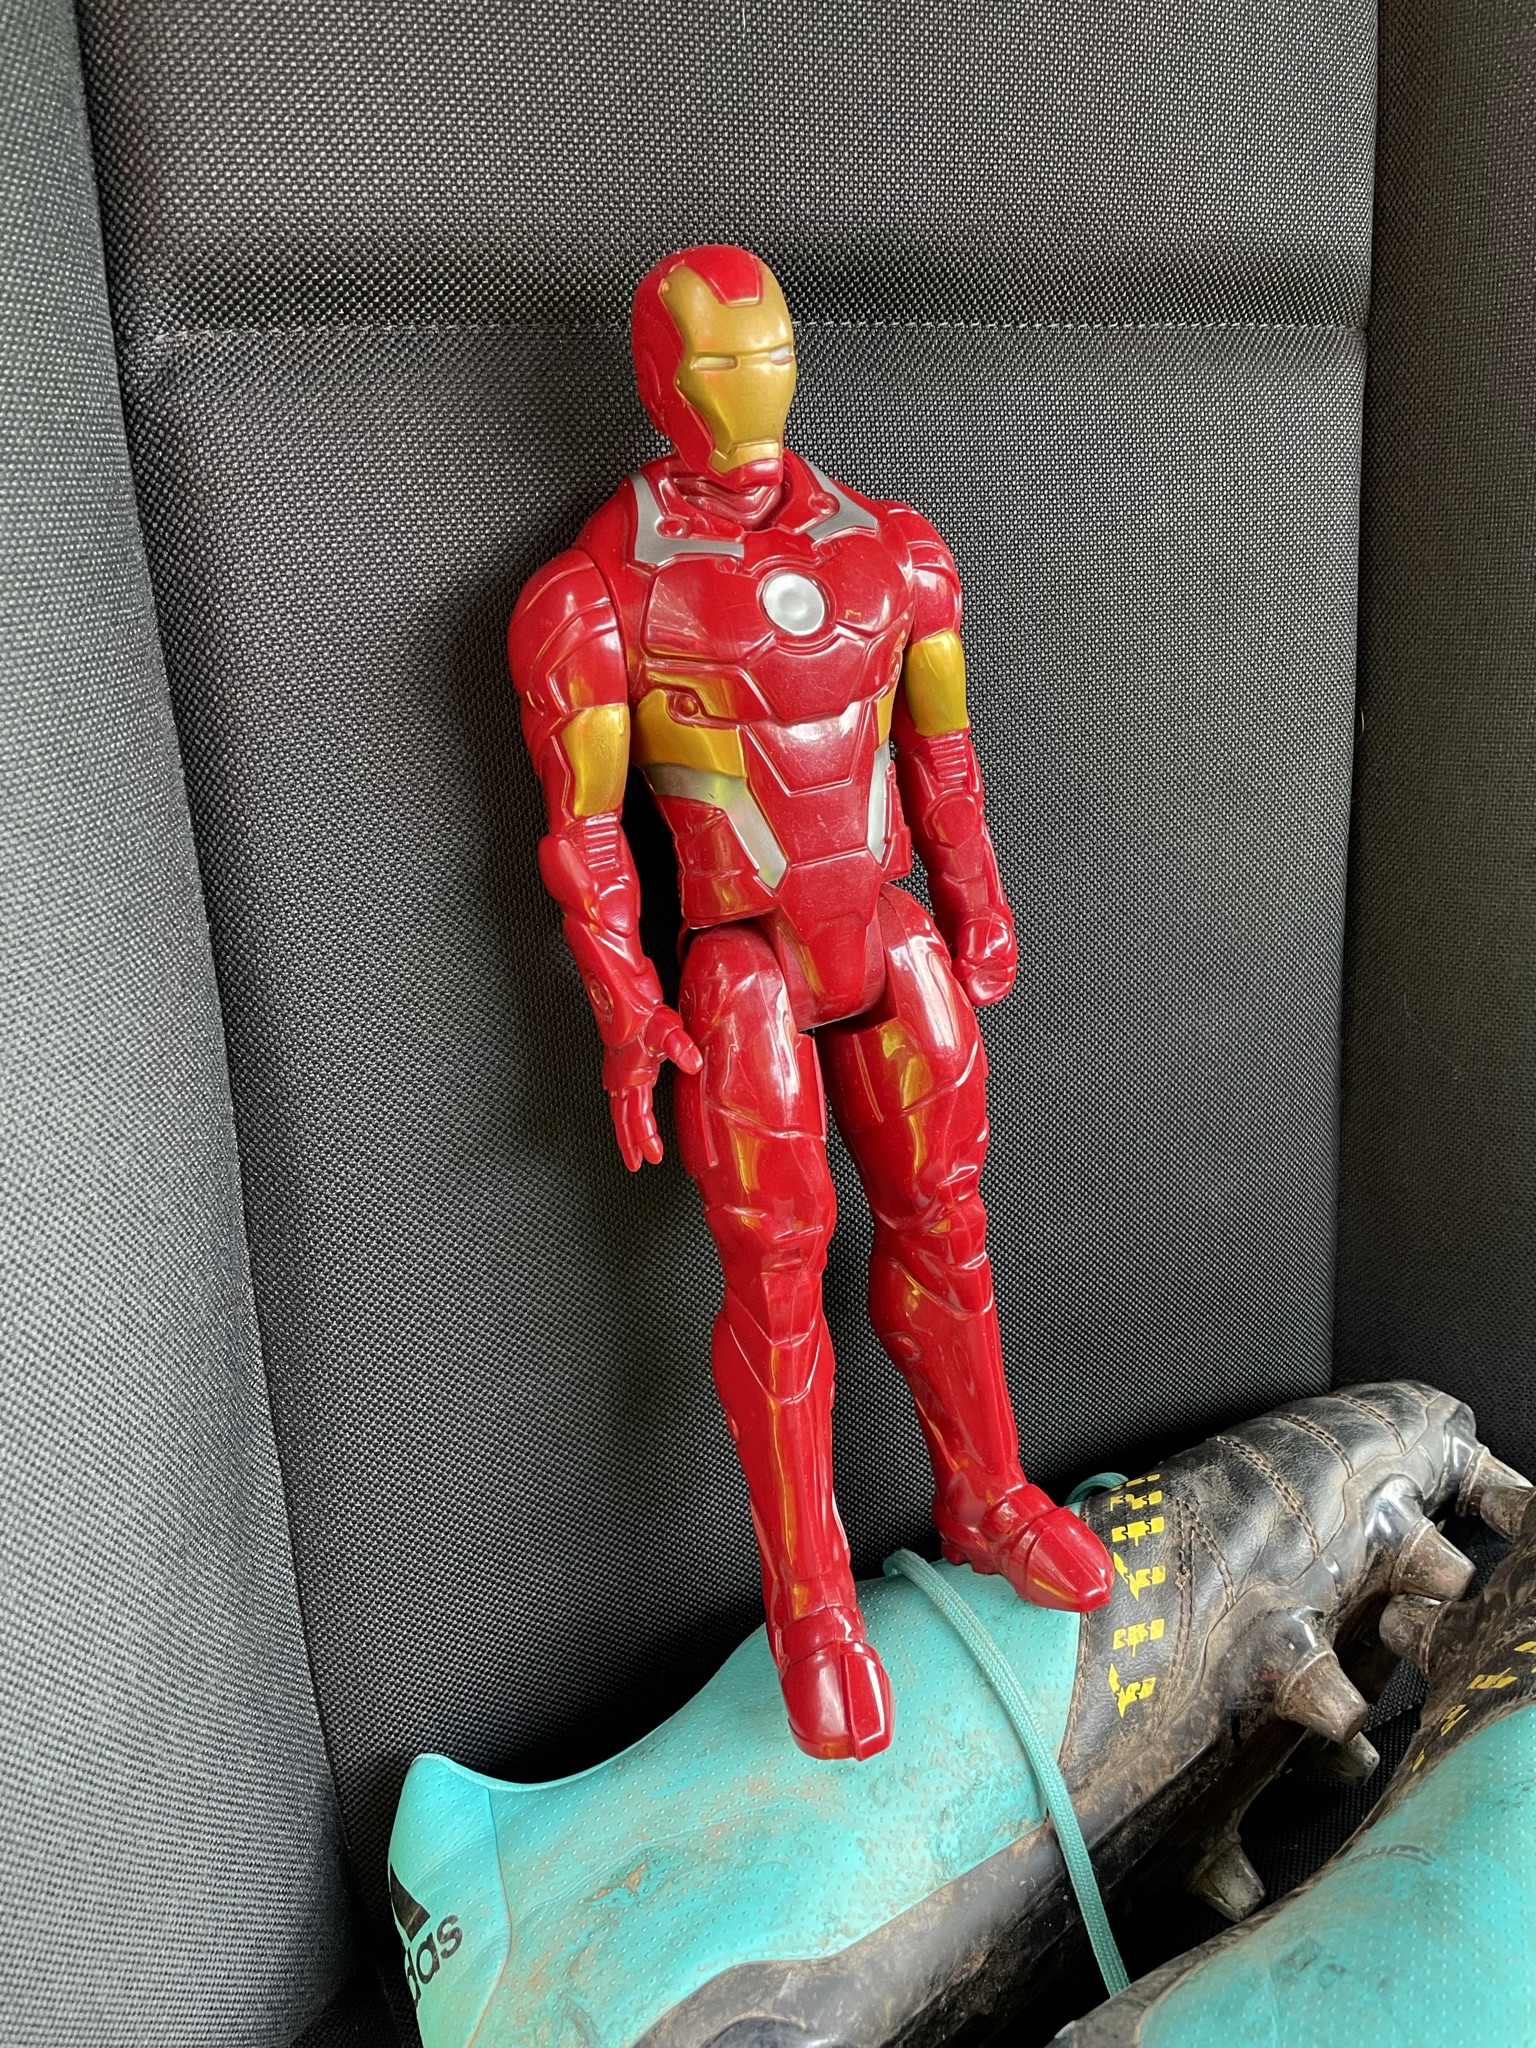 Iron man figure smashed under my ...